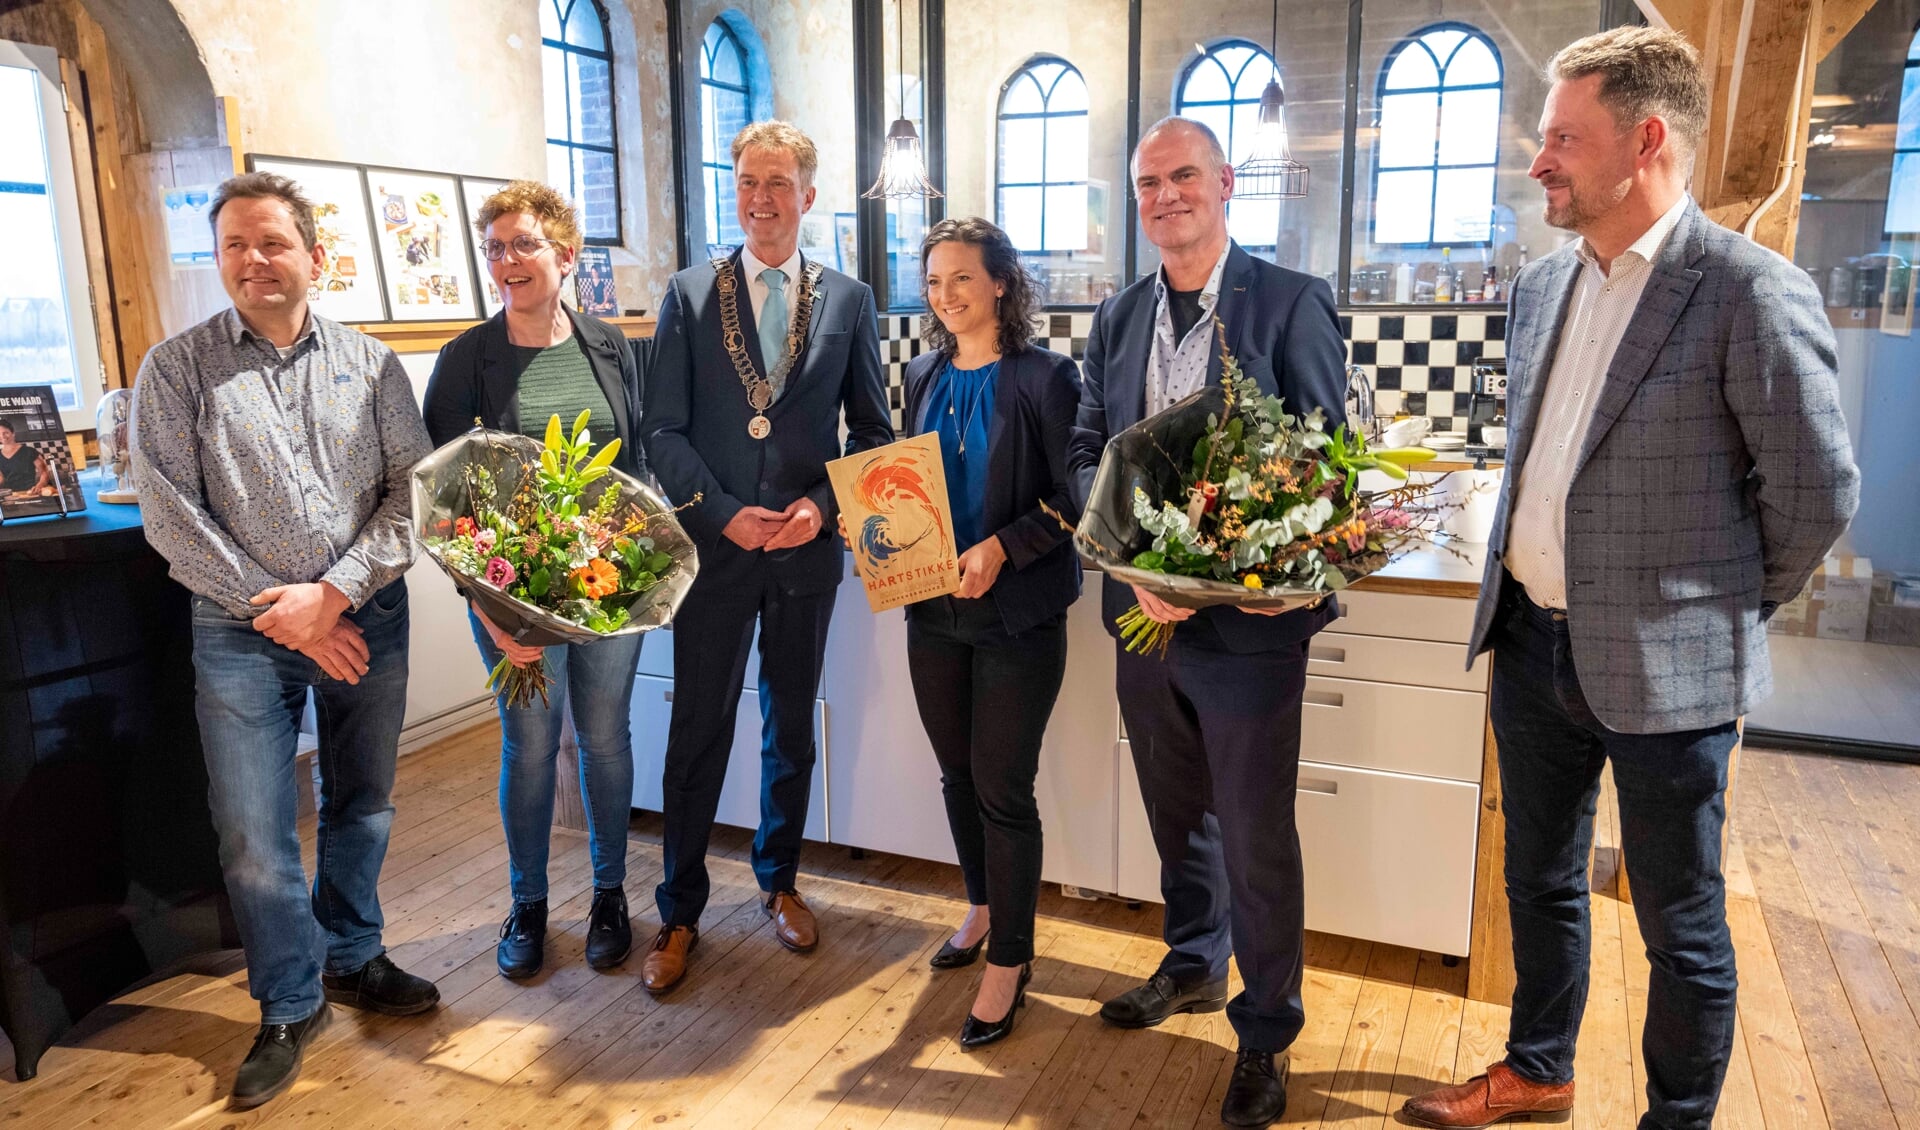 • Groepsfoto tijdens de prijsuitreiking, met in het midden de trotse winnaar Esther van Leeuwe.